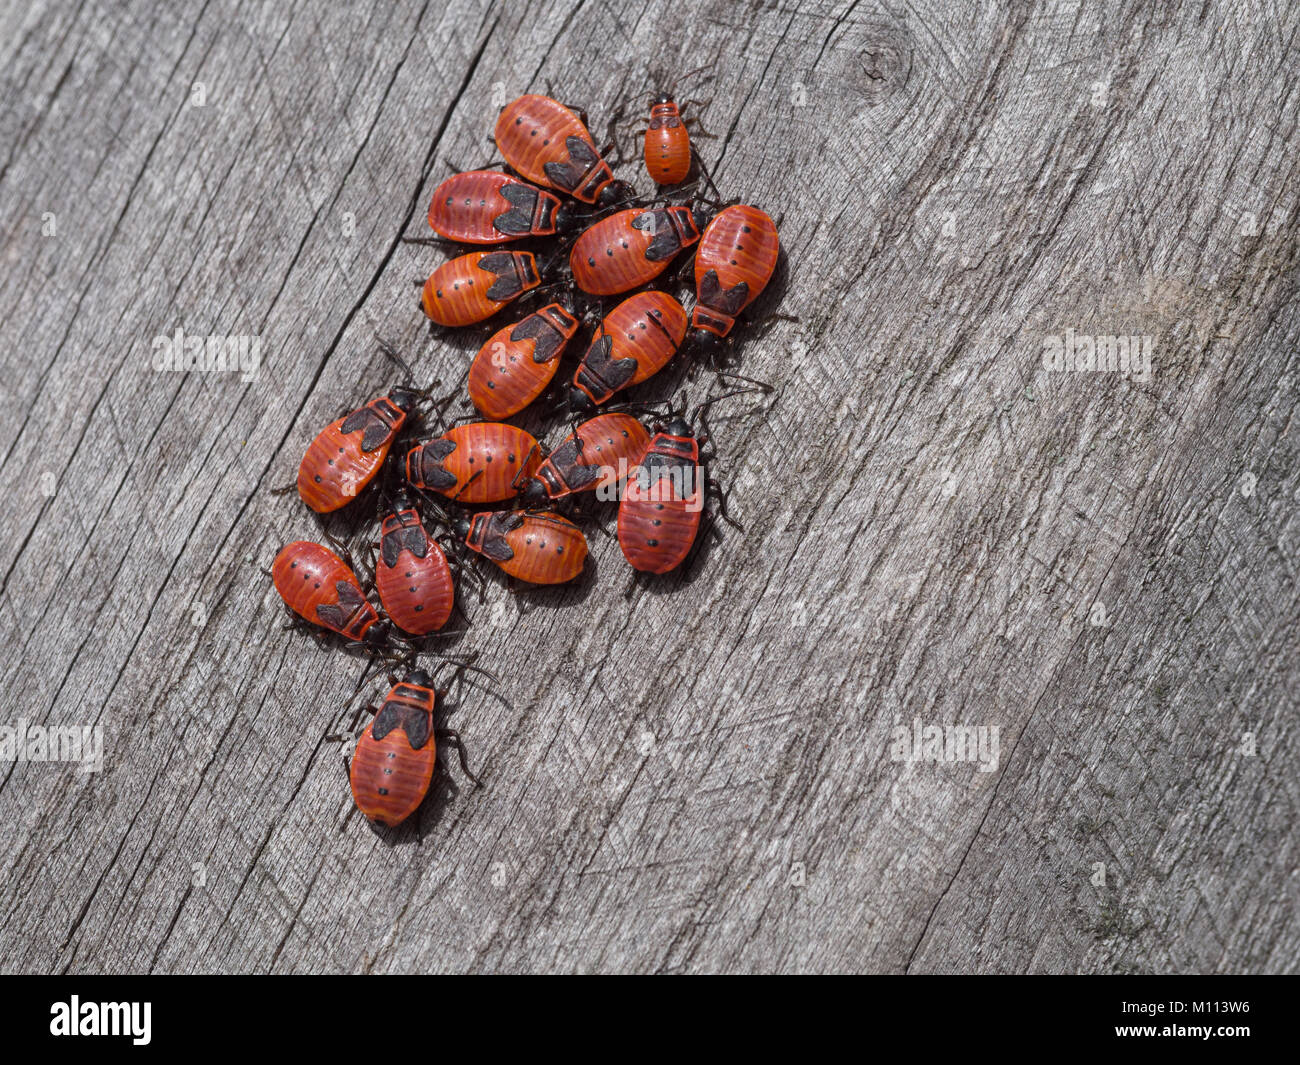 Firebug, Pyrrhocoris apterus Stock Photo